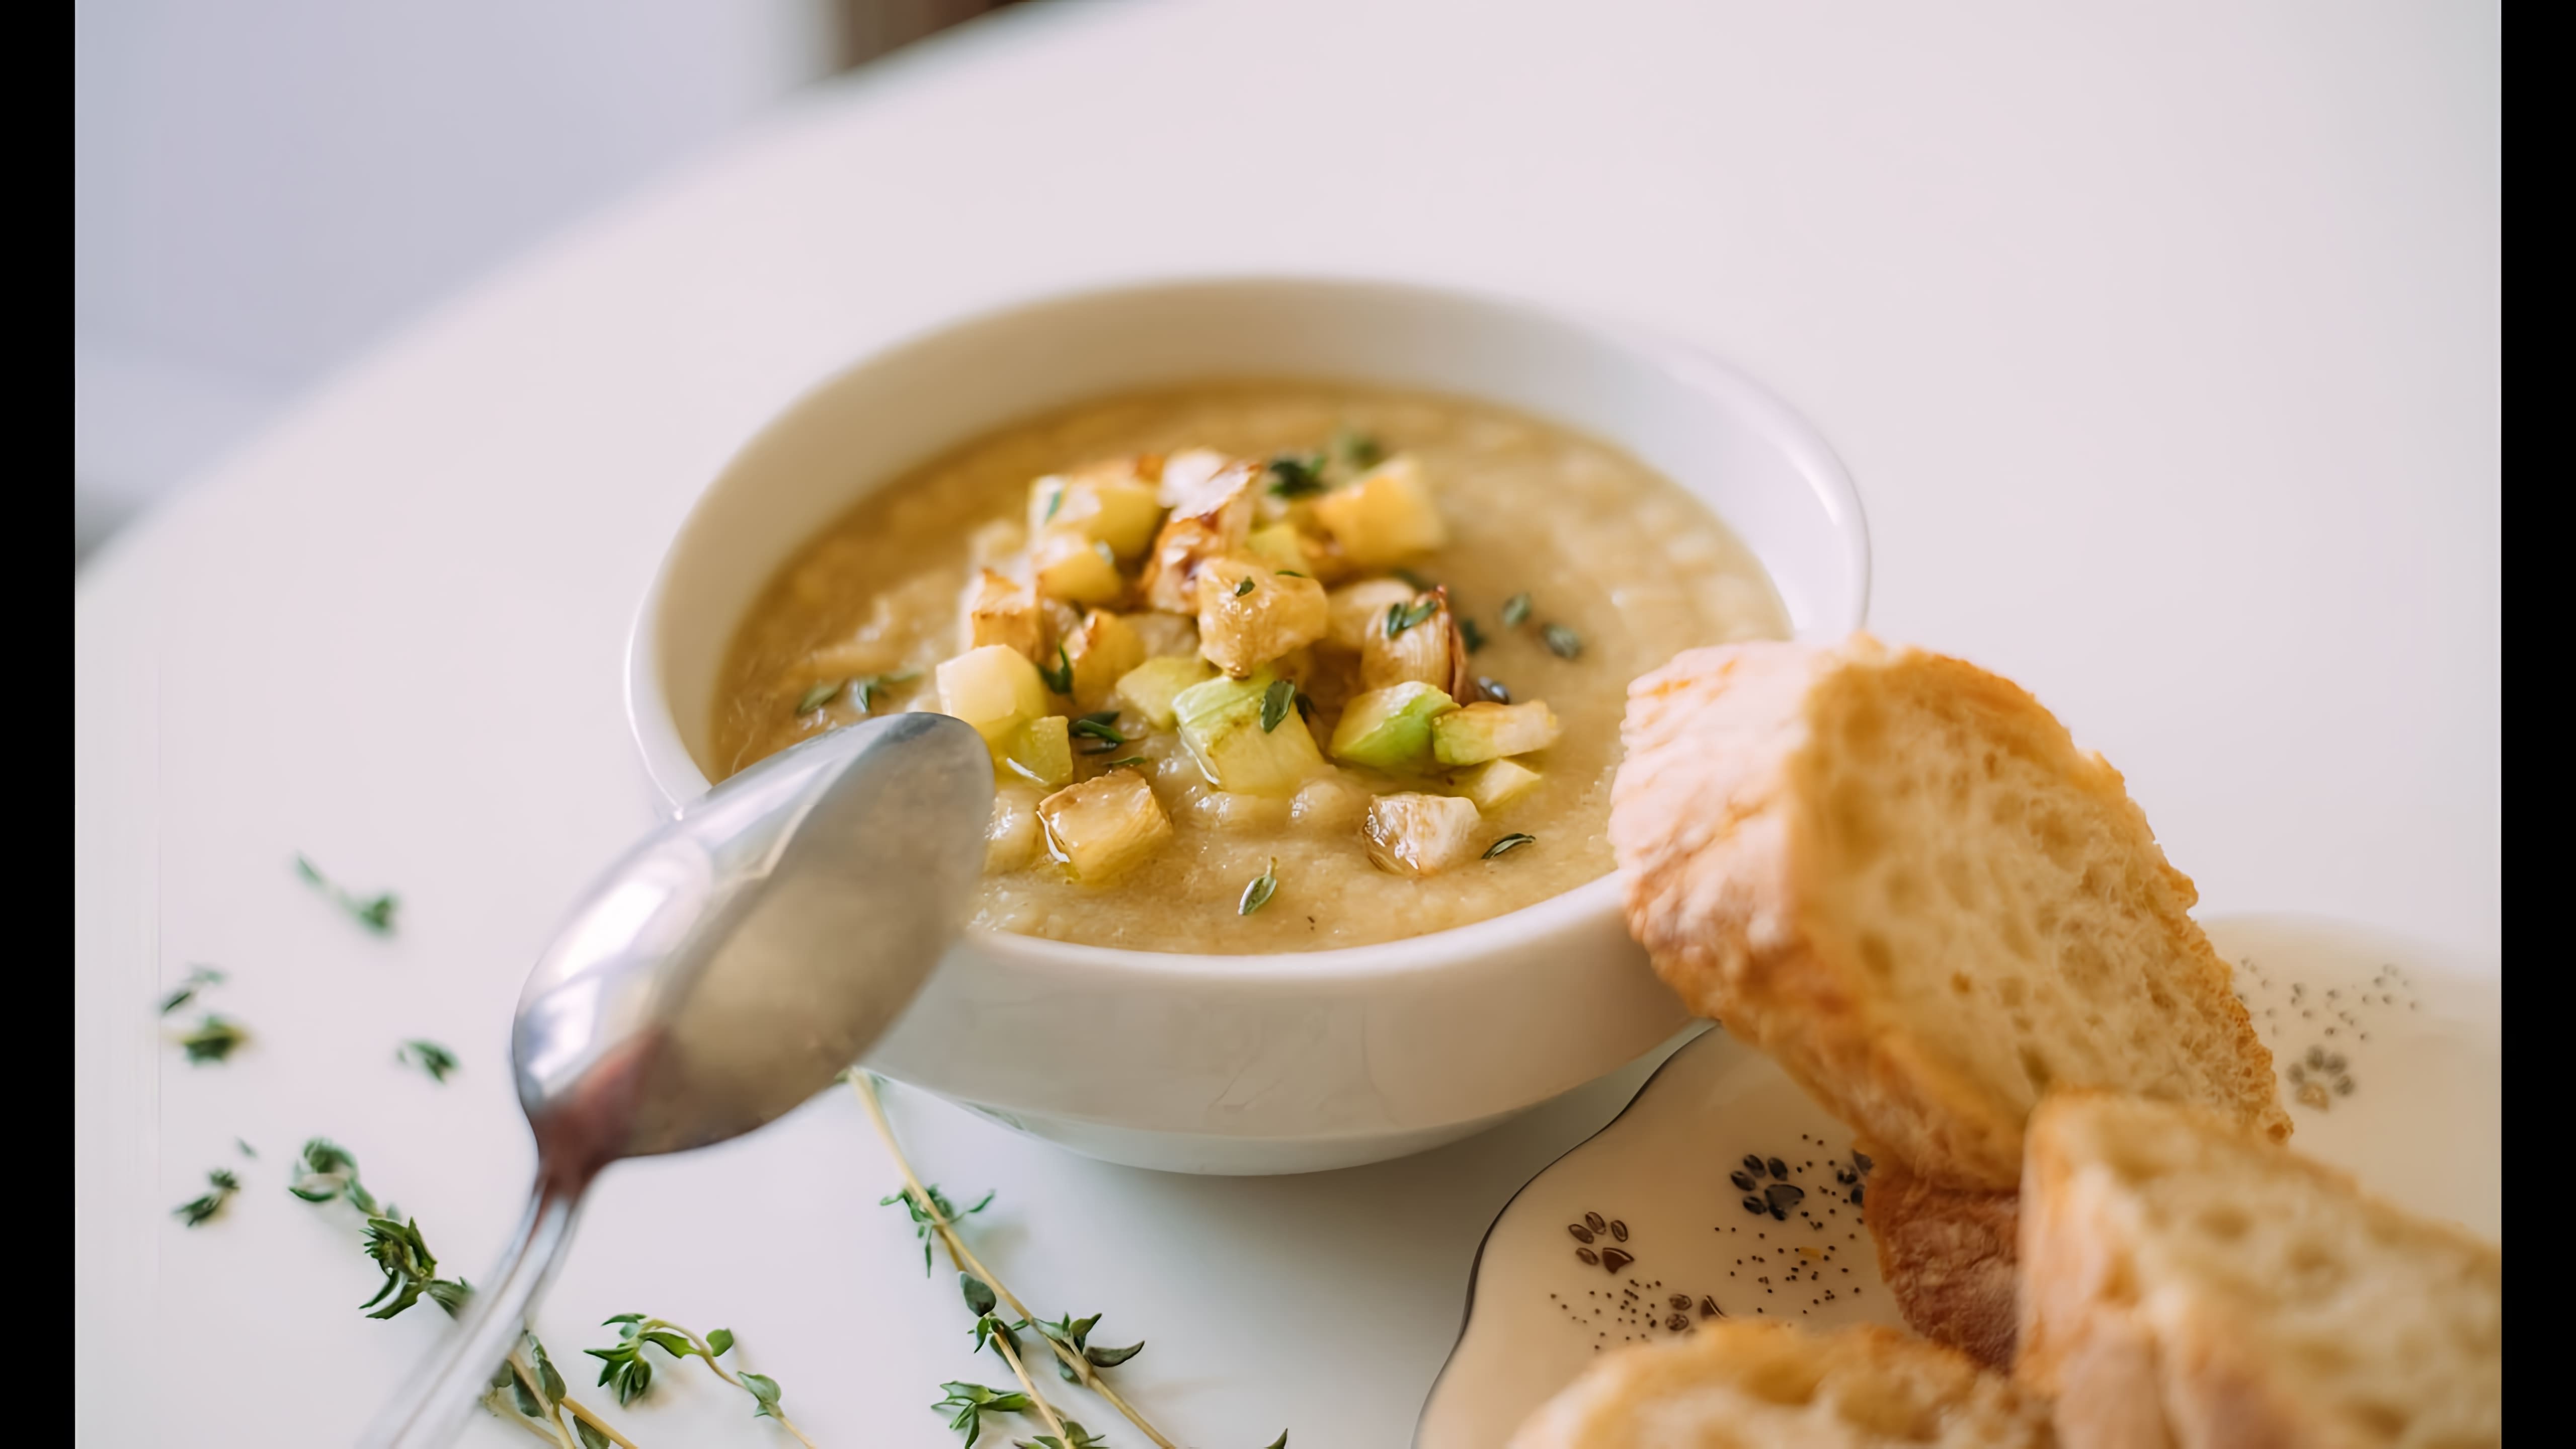 Крем-суп с корневым сельдереем и кабачками - это вкусное и питательное блюдо, которое можно приготовить в домашних условиях